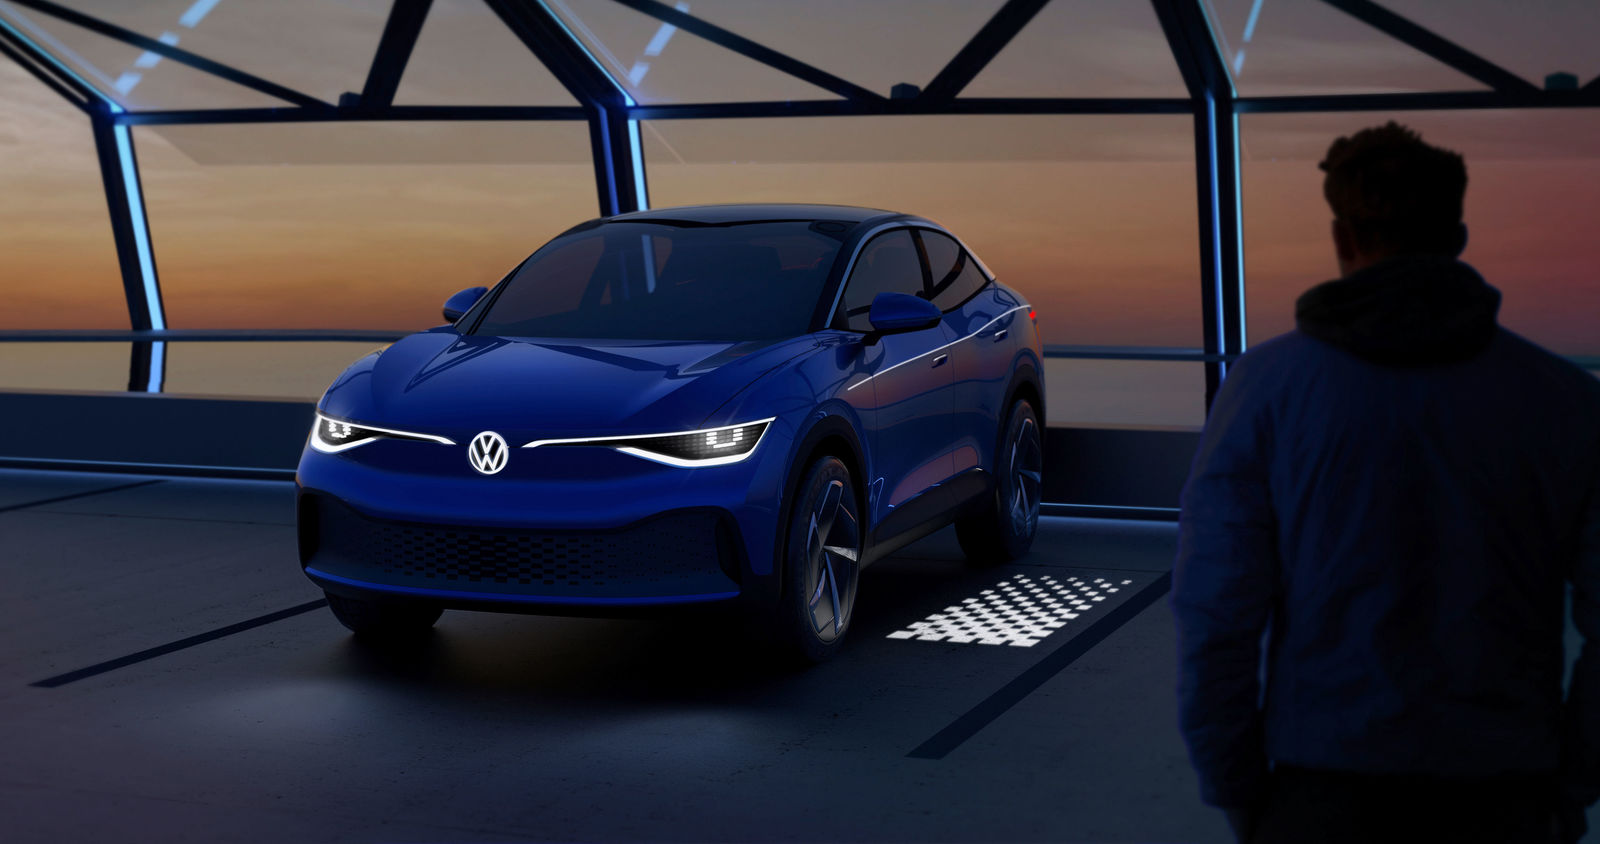 VW lässt es leuchten: Lichtdesign statt Chrom als emotionaler